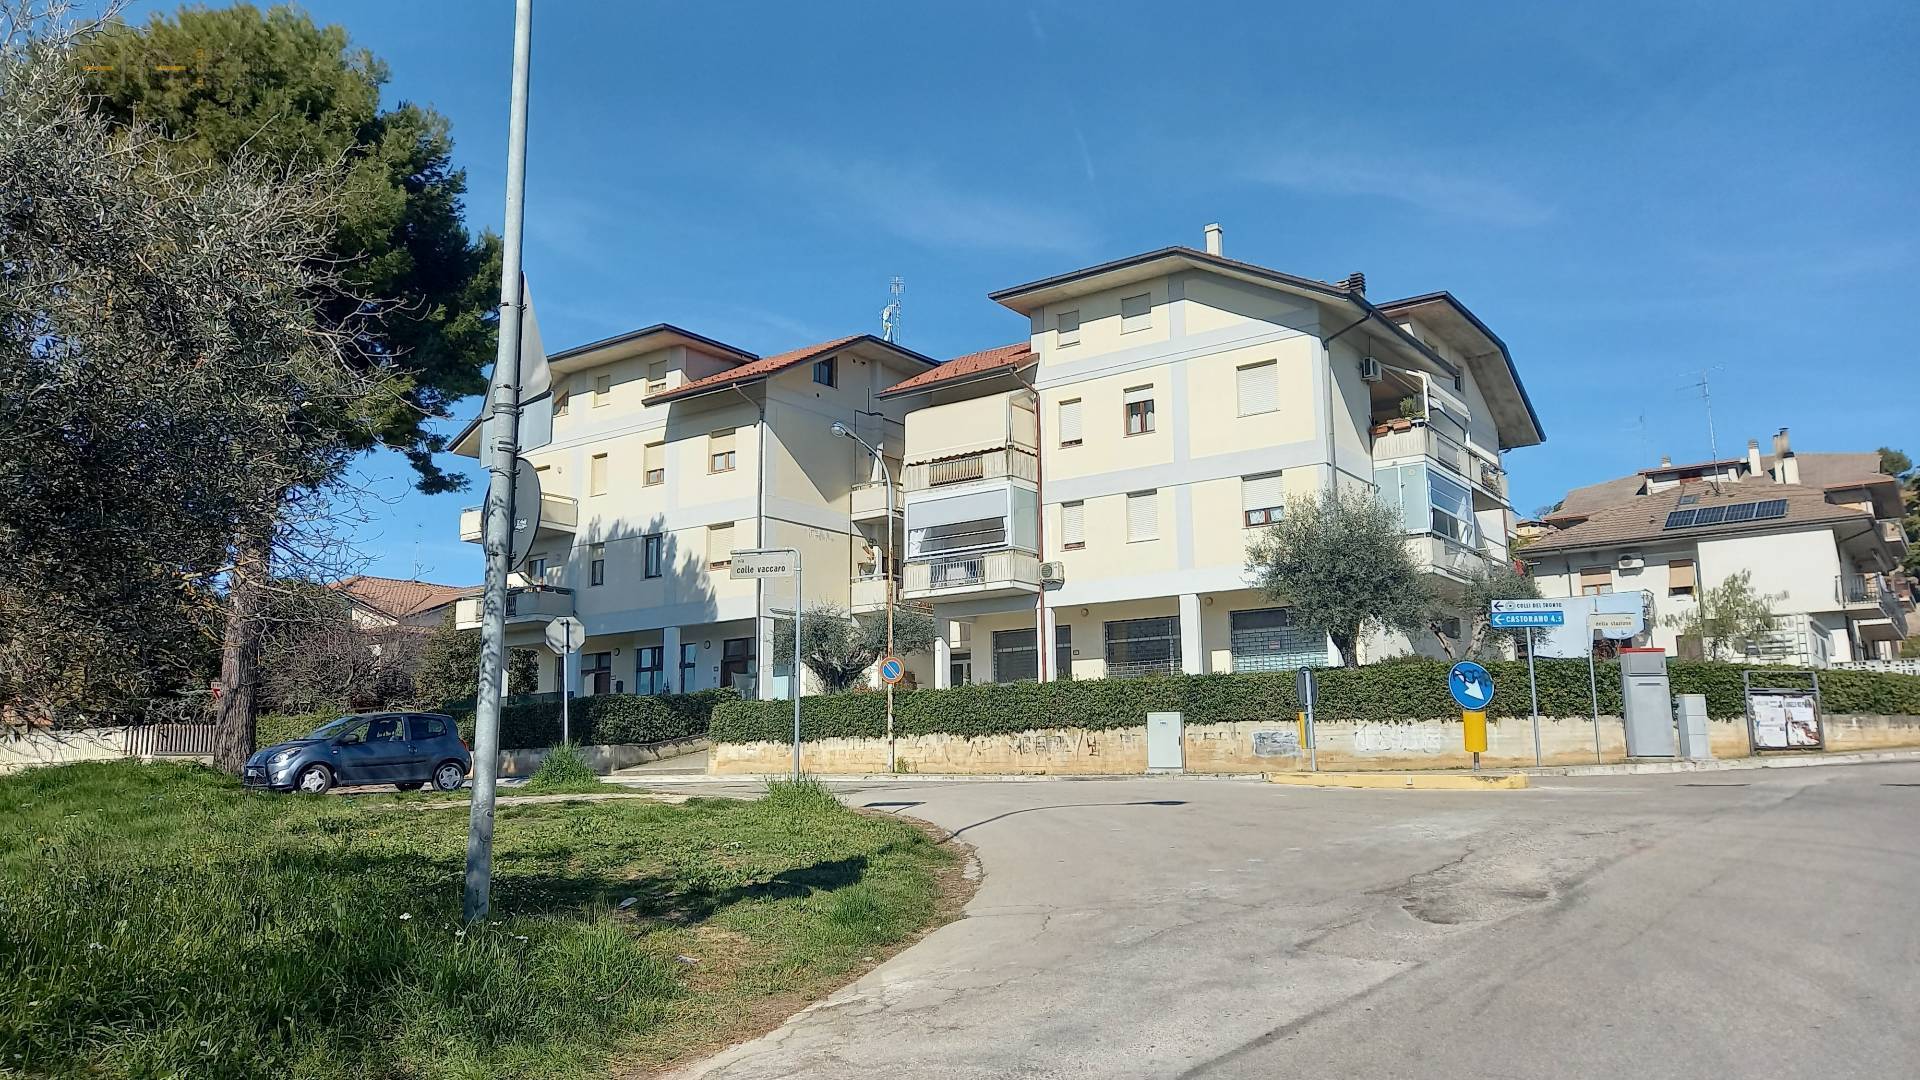 Appartamento in vendita a Colli del Tronto, 4 locali, zona Località: Collinare, prezzo € 125.000 | PortaleAgenzieImmobiliari.it